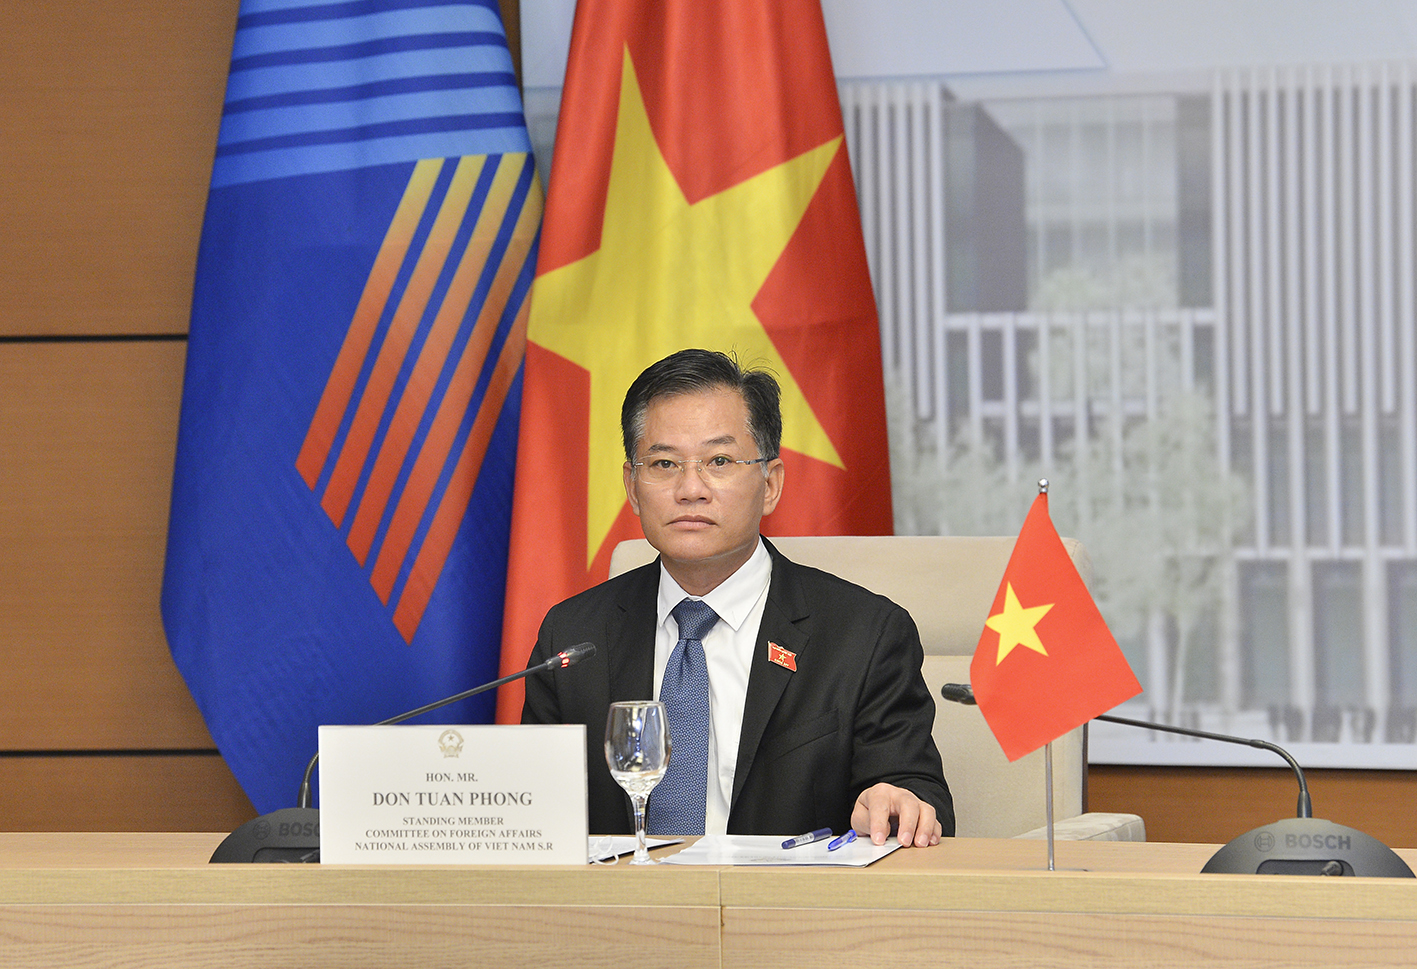 	Ủy viên Thường trực Ủy ban Đối ngoại Đôn Tuấn Phong chia sẻ kinh nghiệm của Việt Nam trong ứng phó với đại dịch Covid-19 tại phiên đối thoại